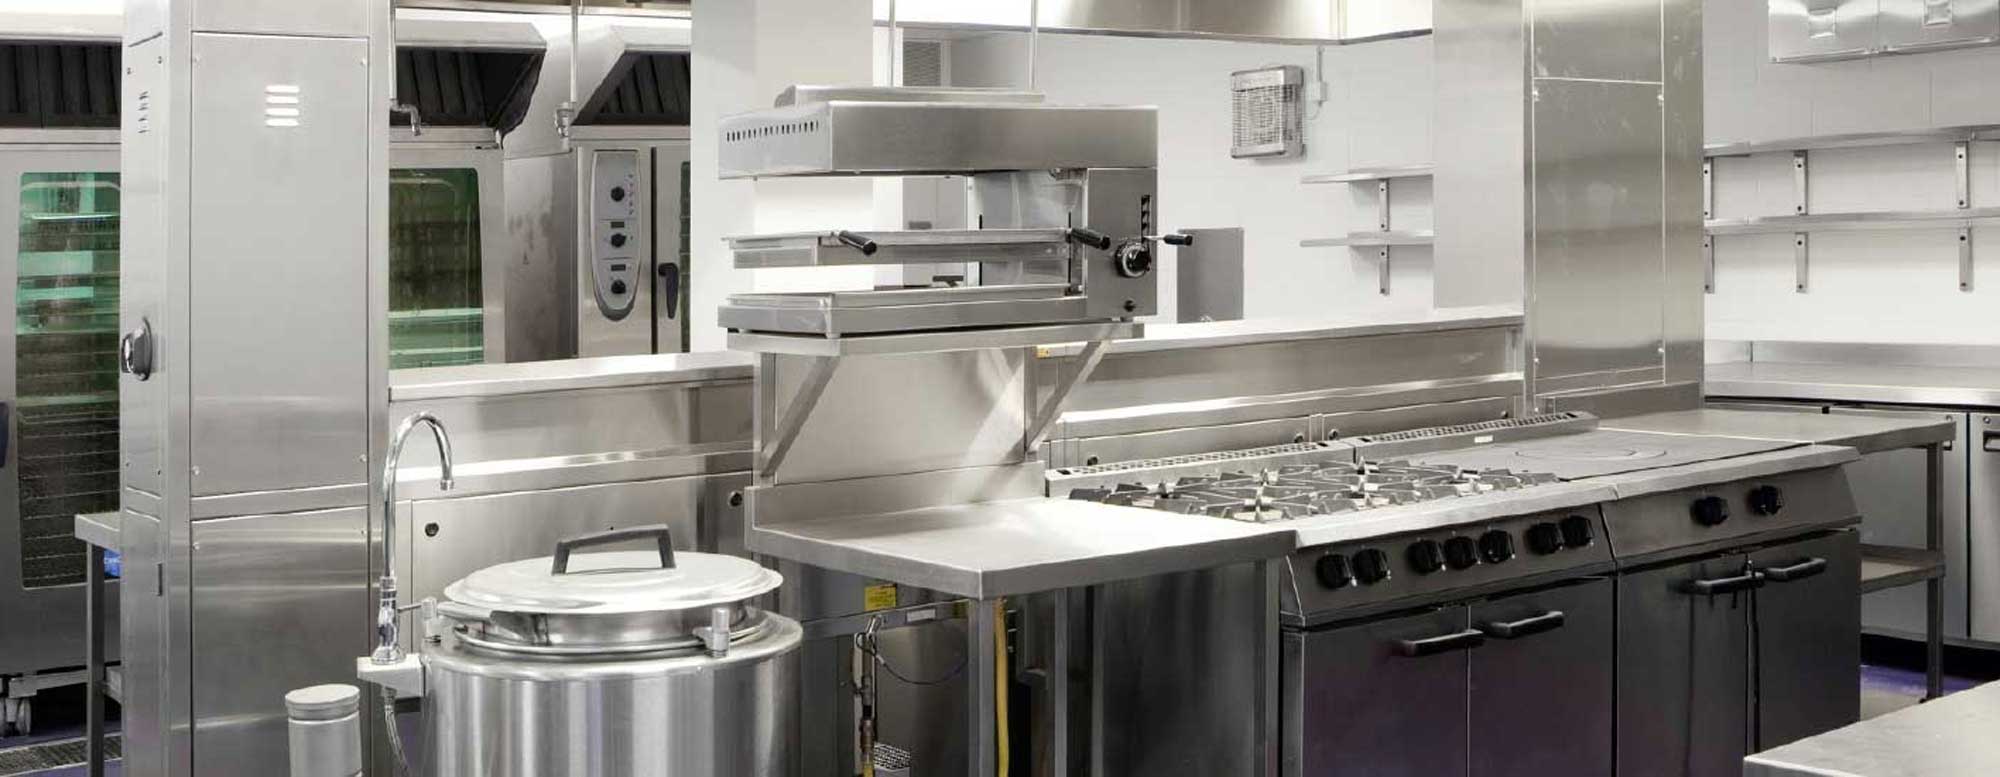 kitchen refrigeration equipment rental